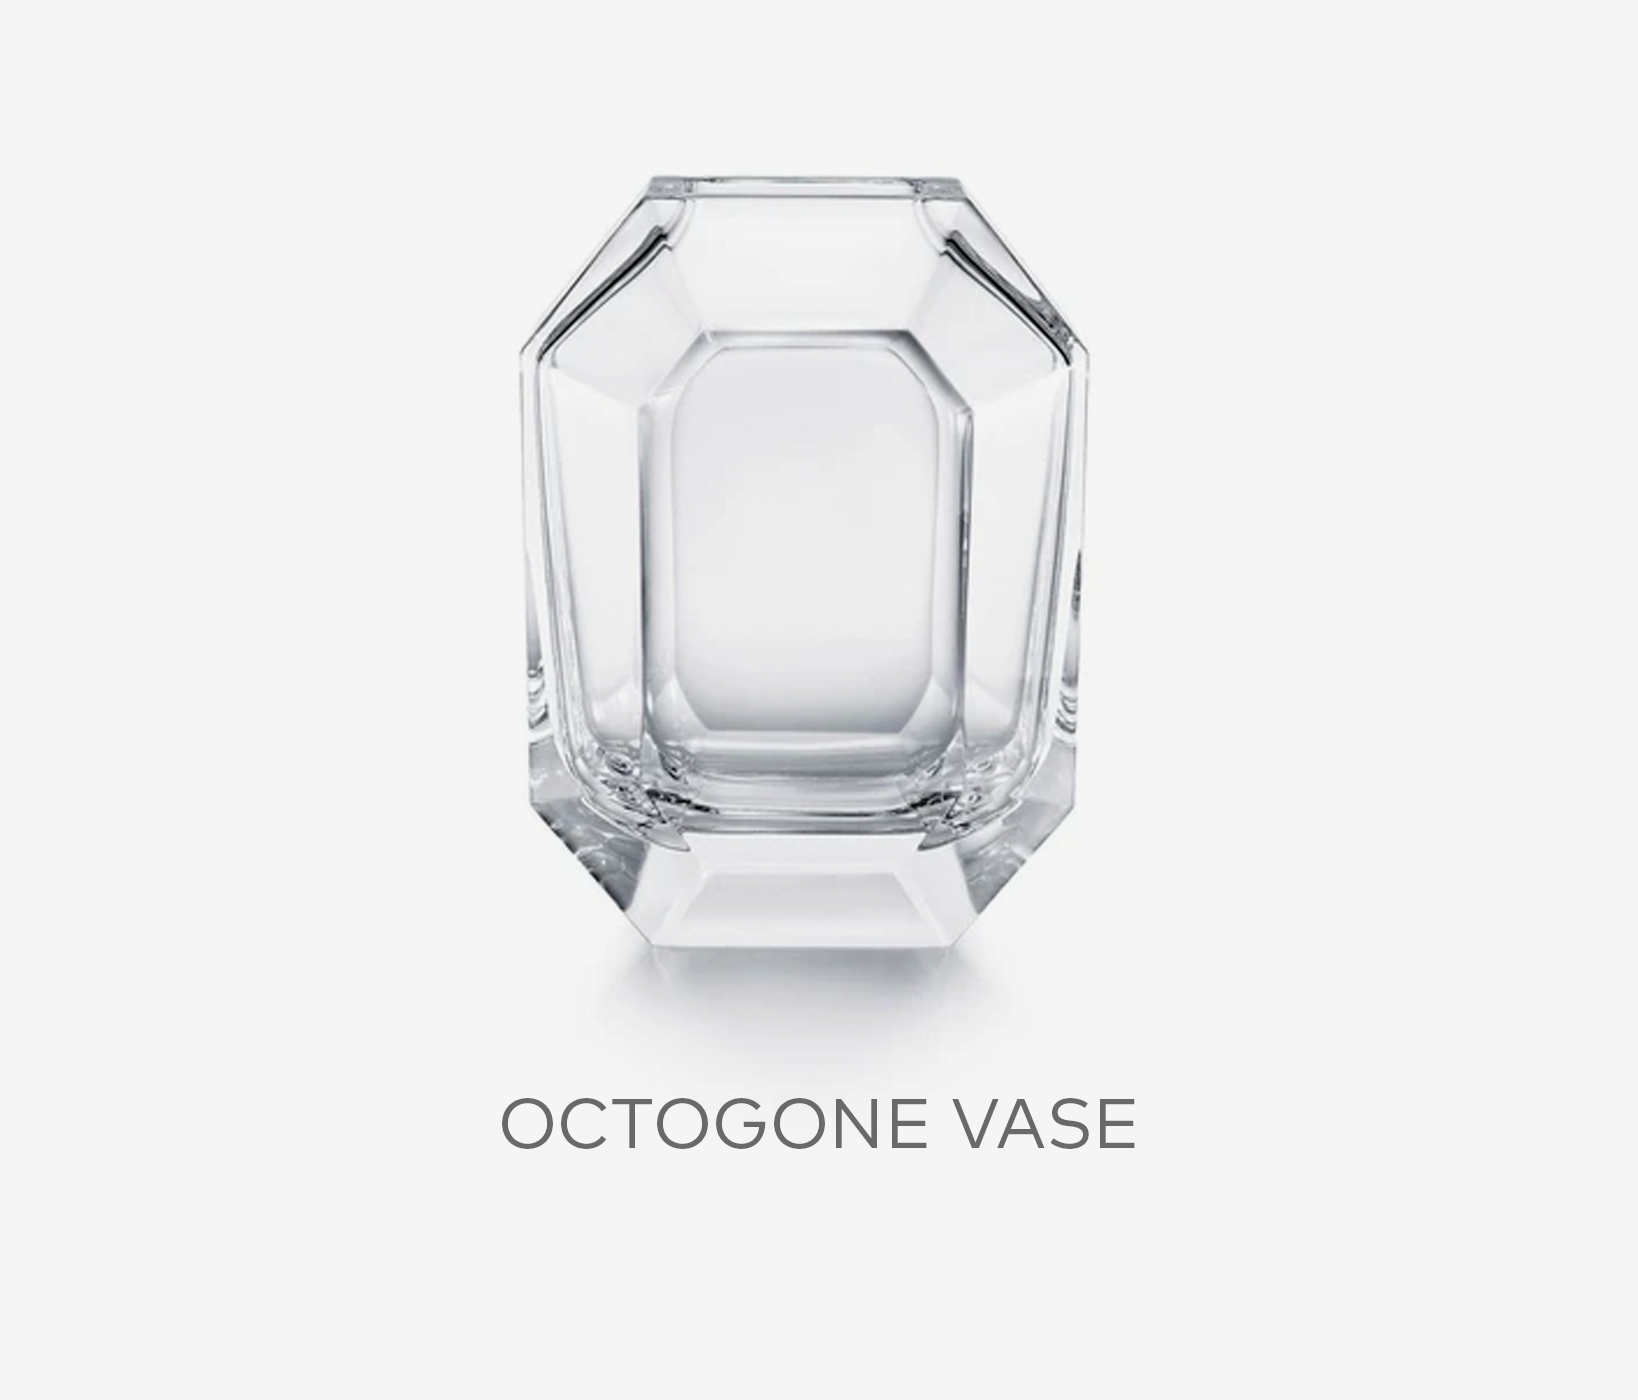 Octogone Vase